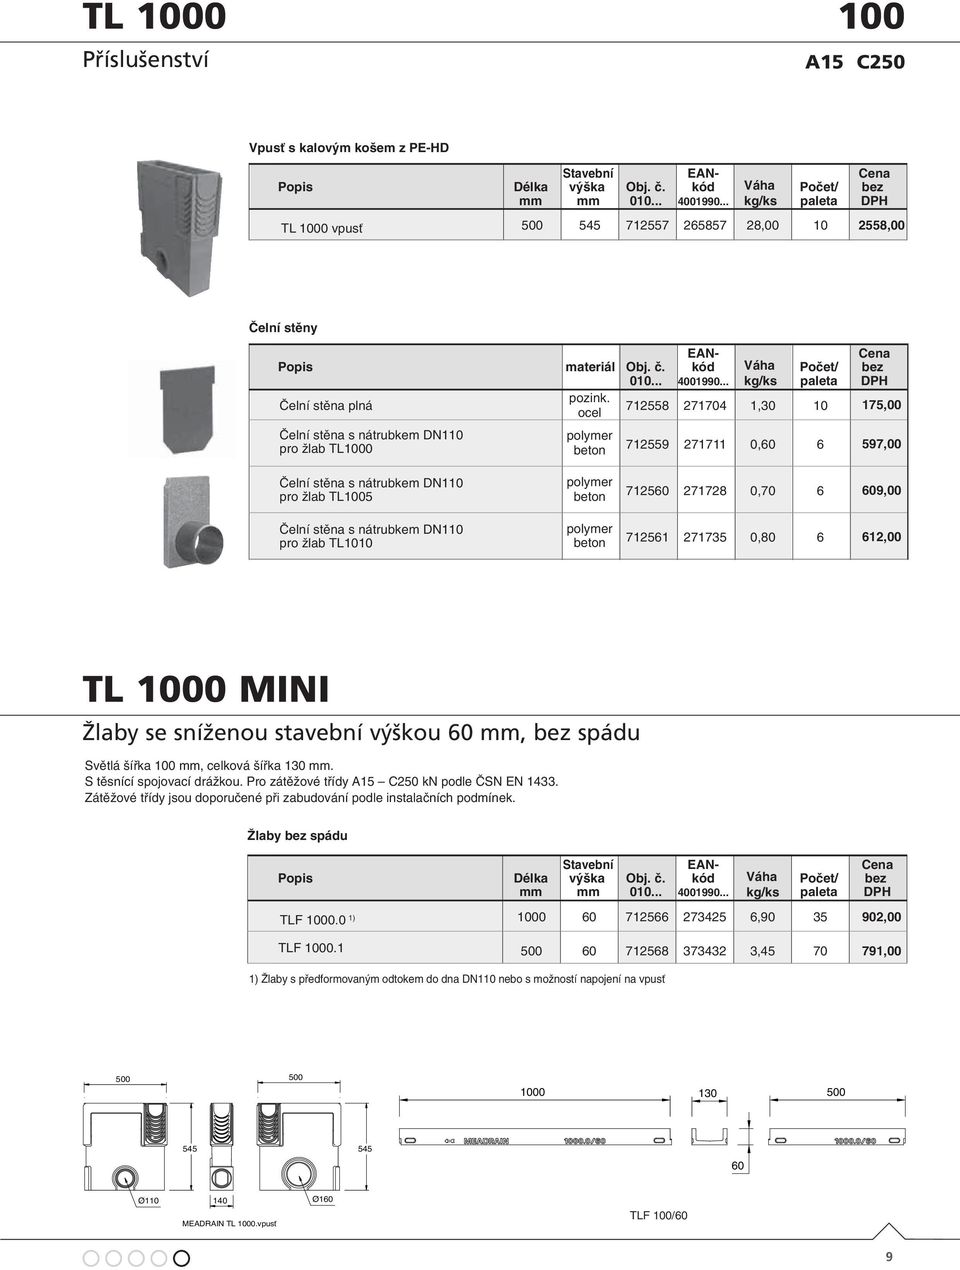 pro žlab TL1010 polymer beton polymer beton 712560 271728 0,70 6 609,00 712561 271735 0,80 6 612,00 TL 1000 MINI TL1000 MINI Žlaby se sníženou stavební výškou 60, spádu.